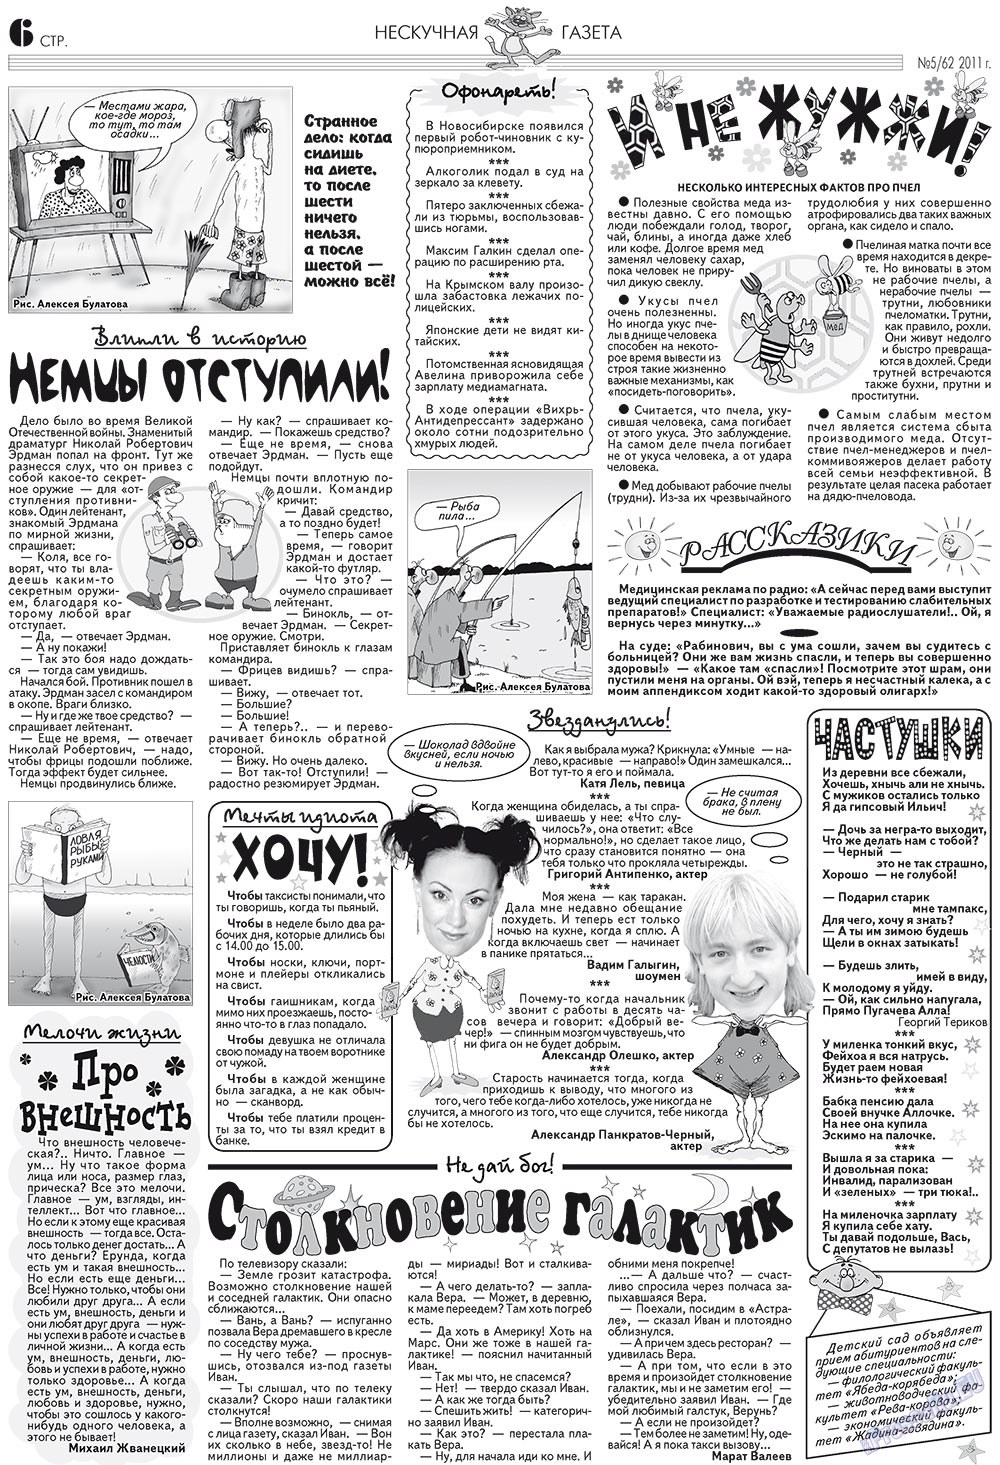 Нескучная газета (журнал). 2011 год, номер 5, стр. 6